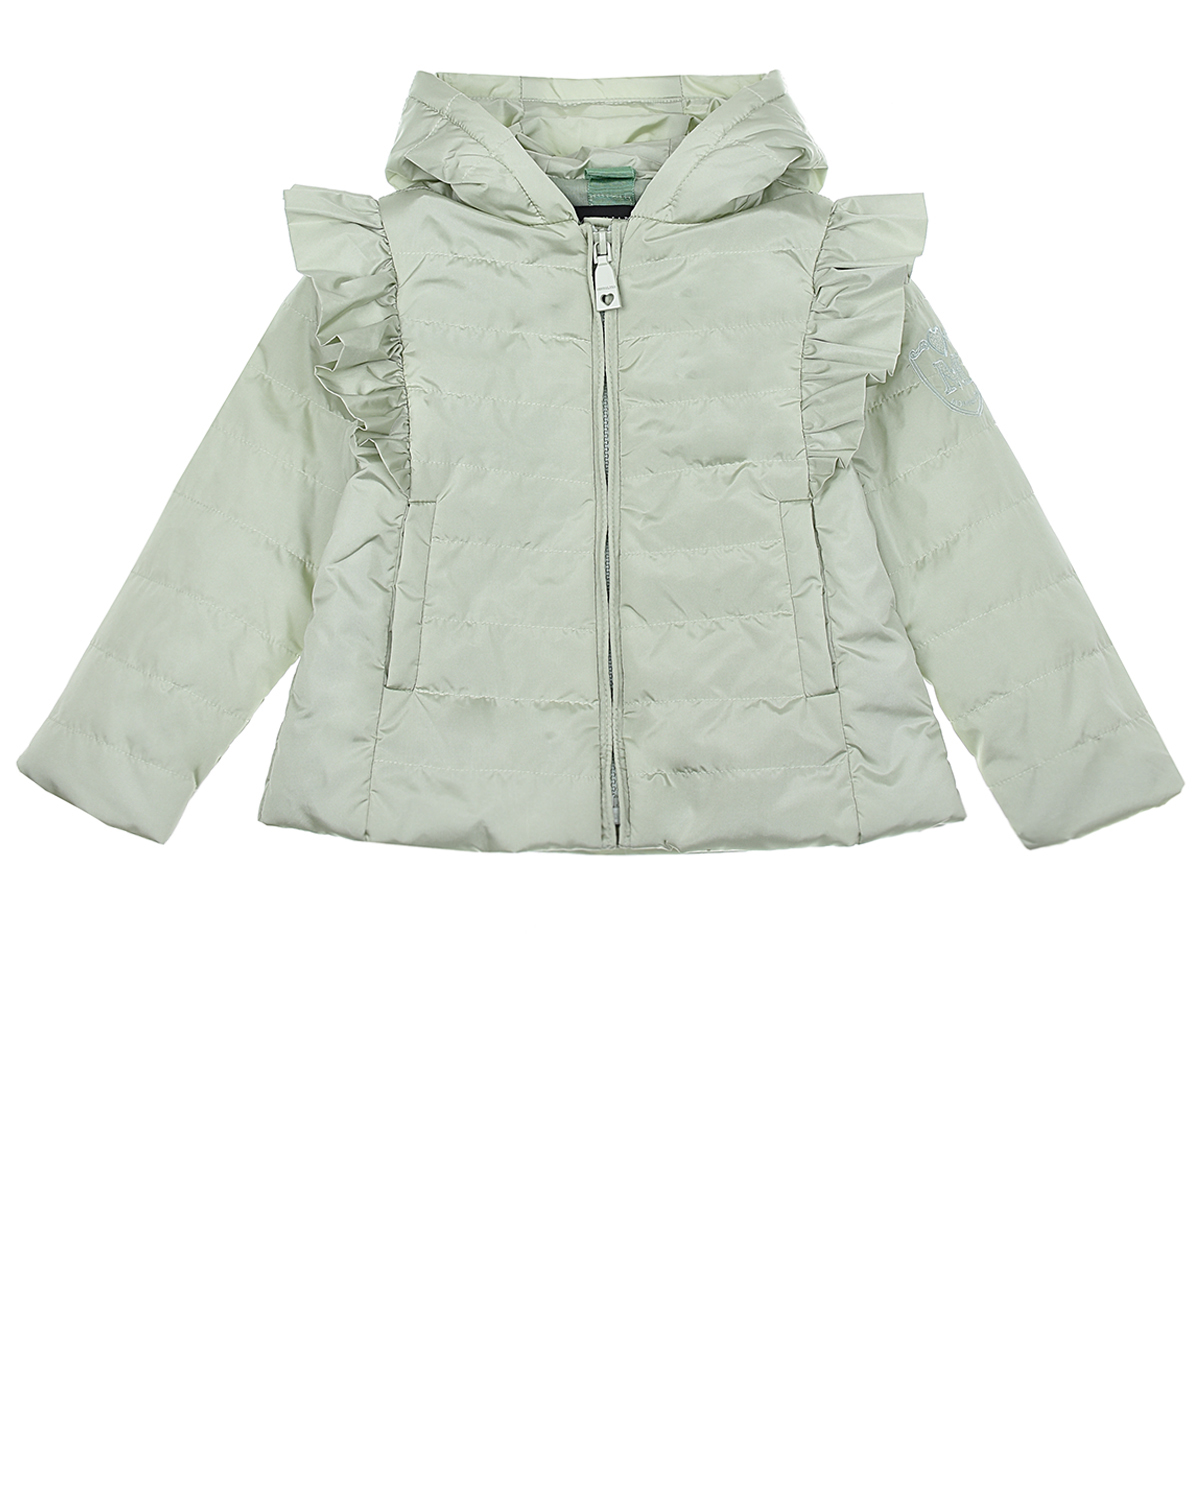 Купить Стеганая куртка с воланами Monnalisa детская, Нет цвета, 100%полиэстер, 100%хлопок